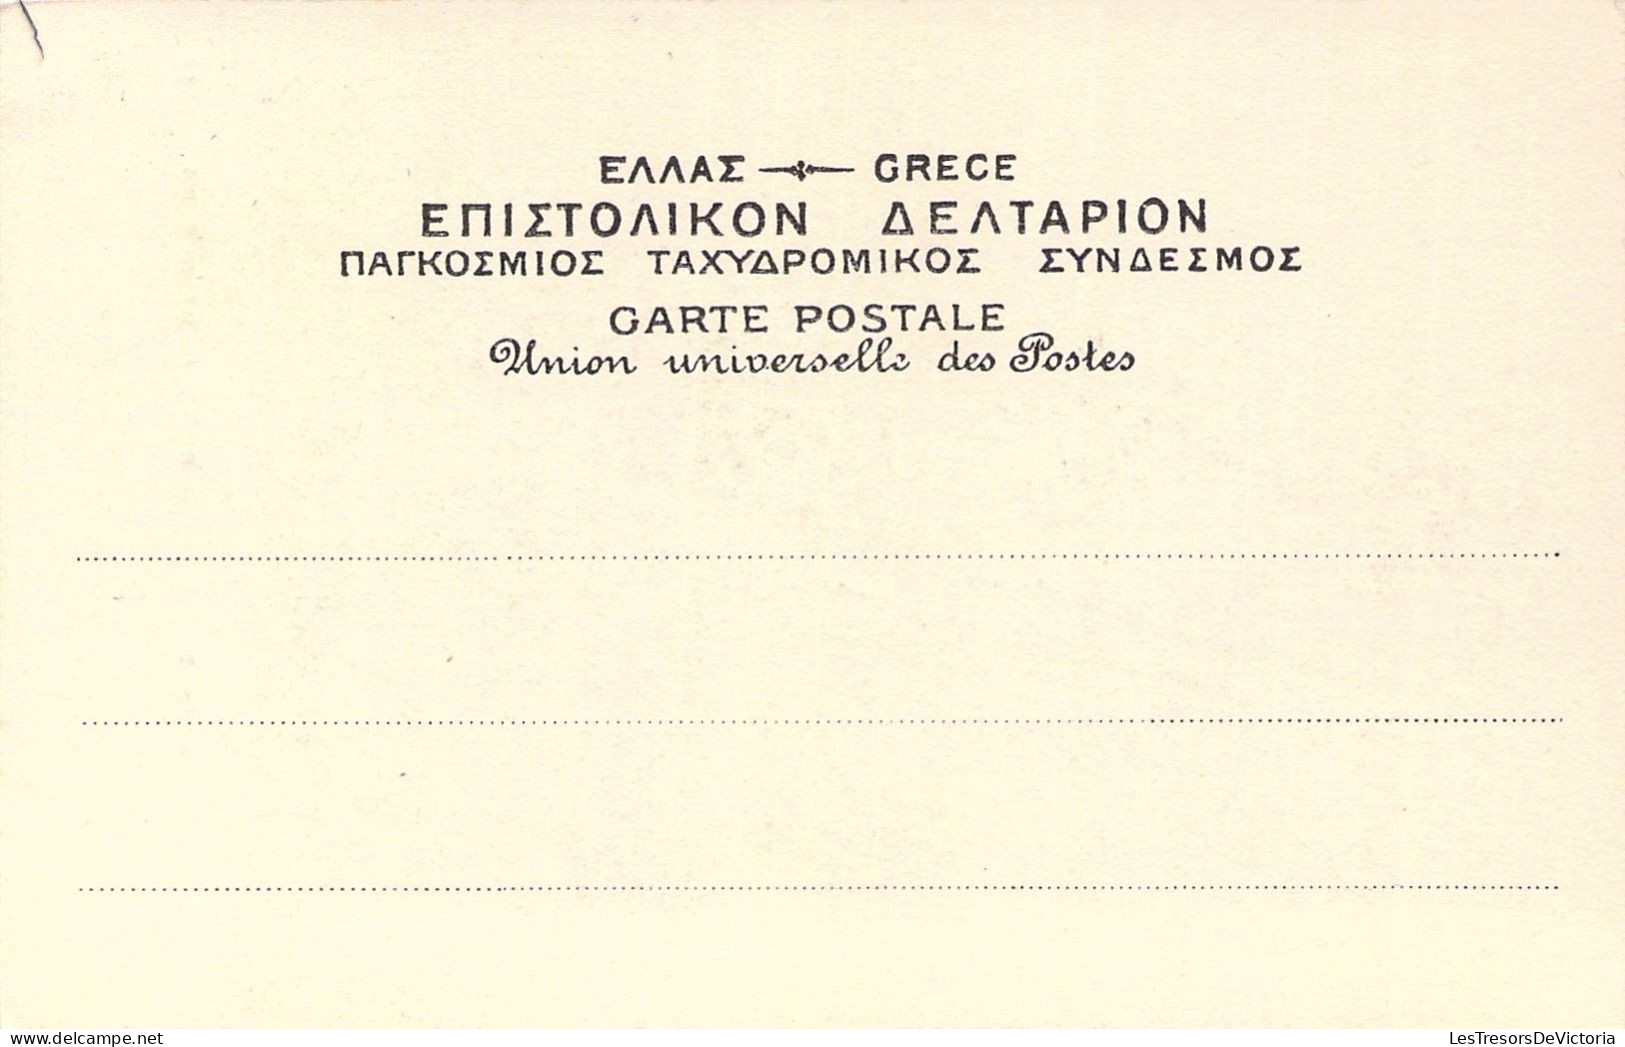 Grèce - Berger De Doride - Folklore - Costume -  Carte Postale Ancienne - Griechenland